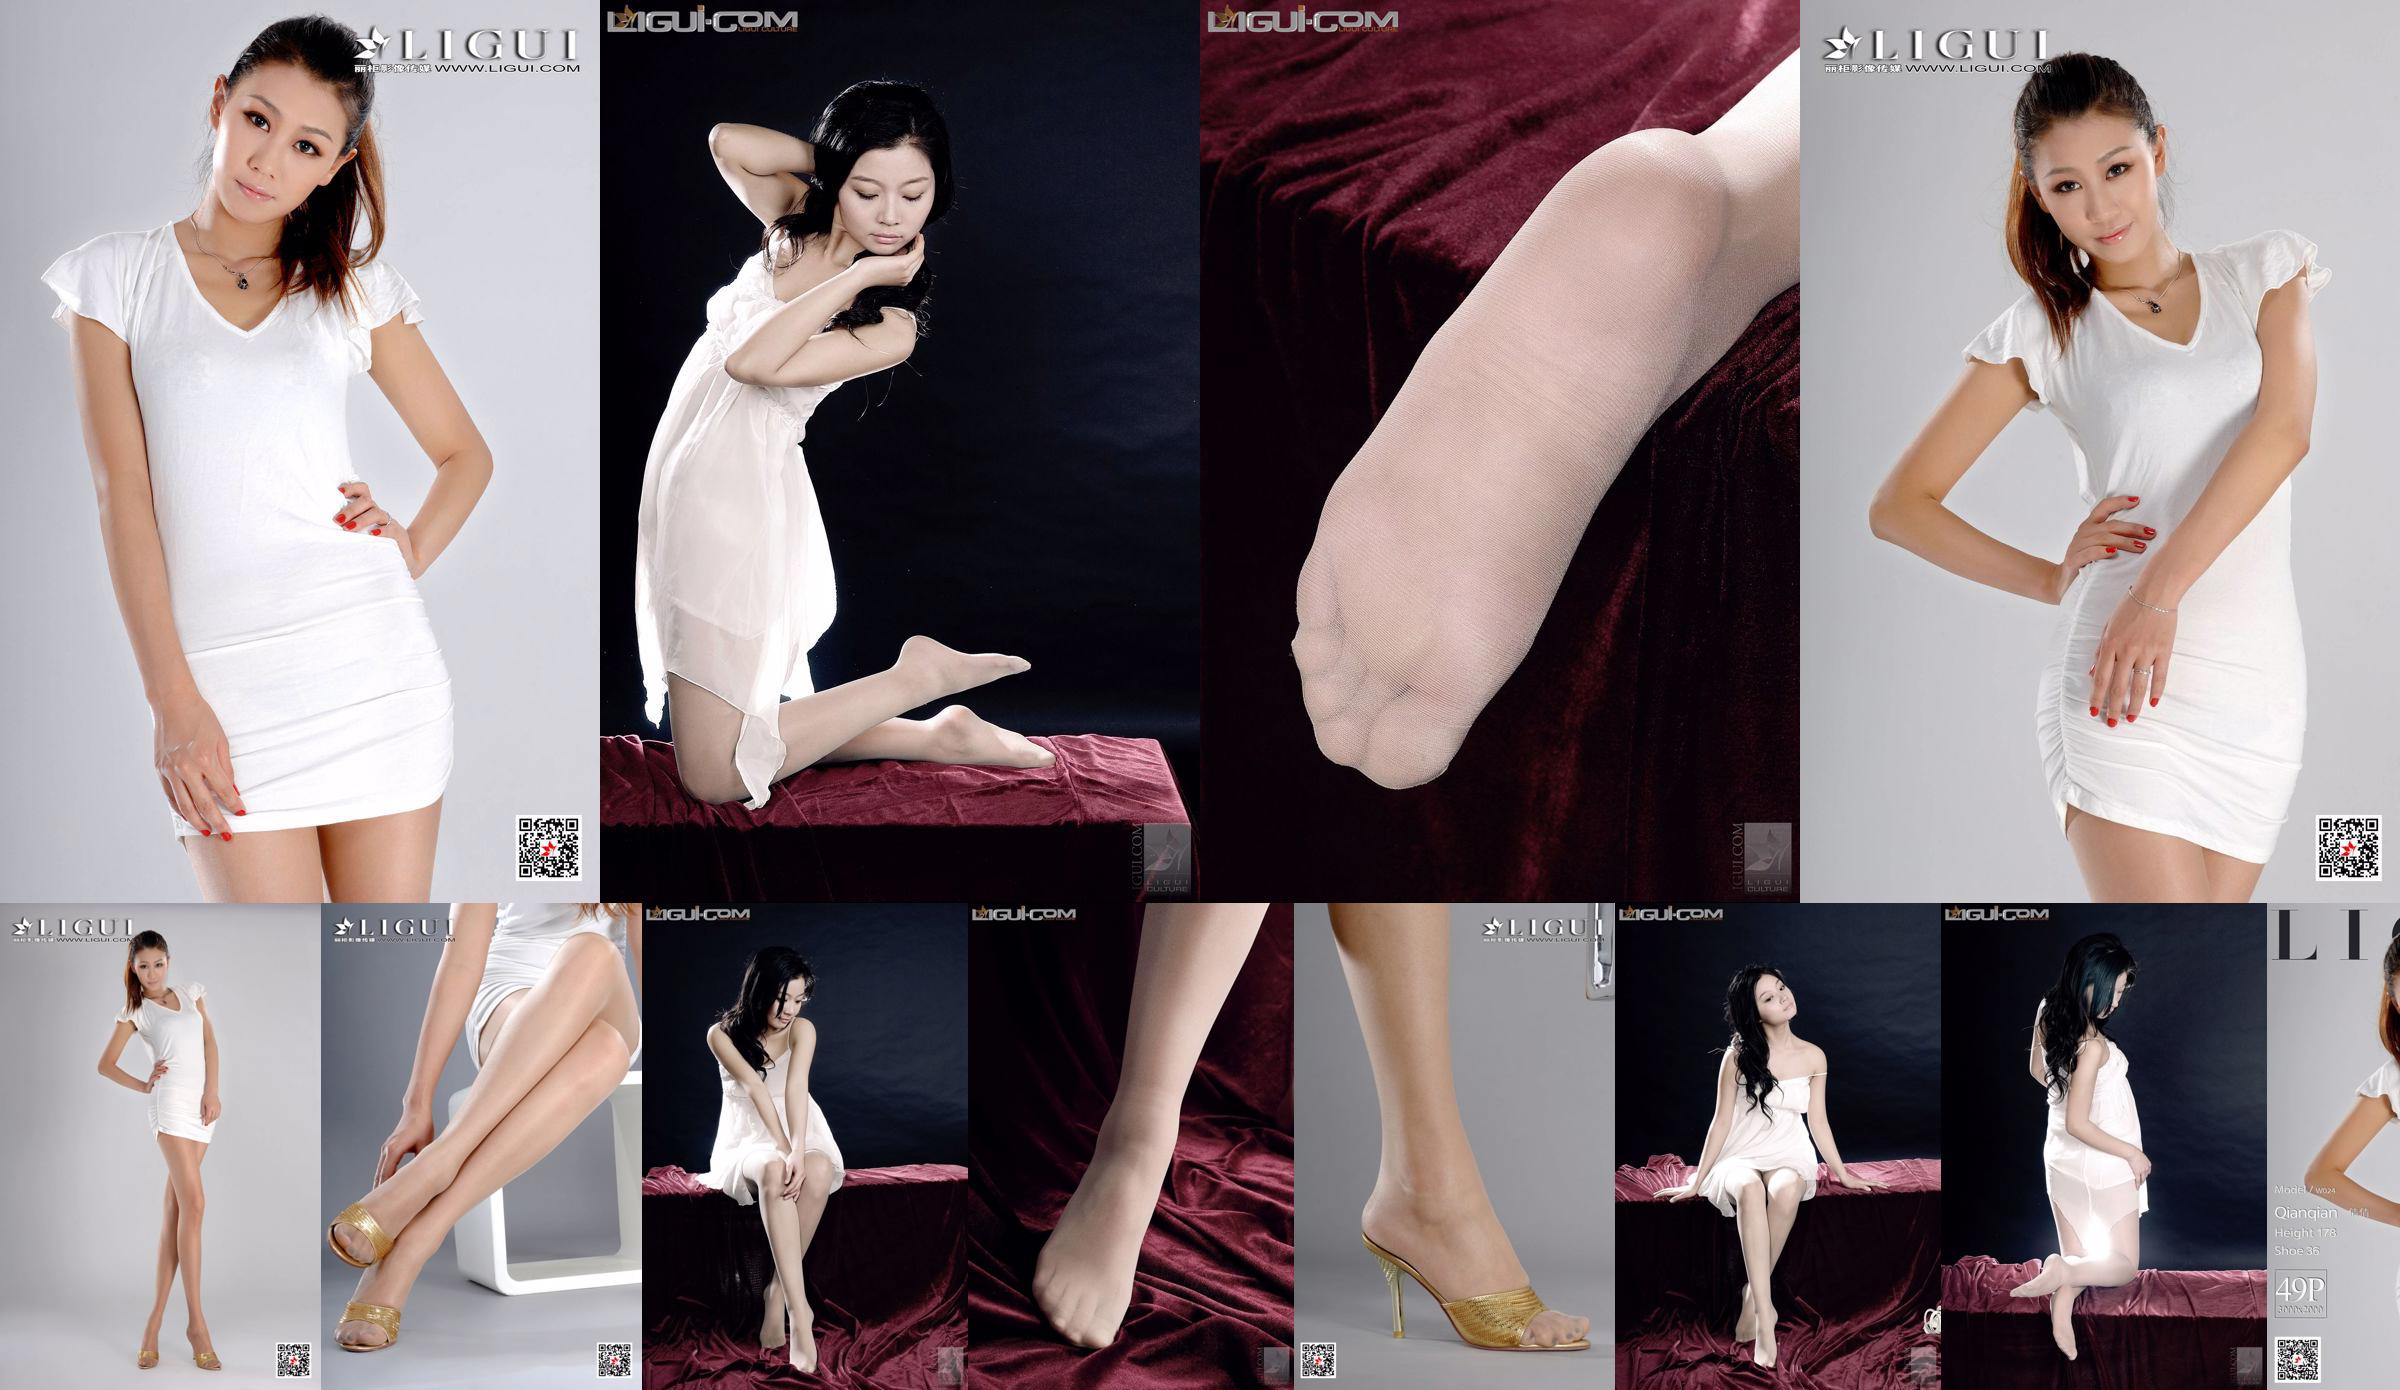 Модель Цяньцянь "Высокая девушка с длинными ногами" [LIGUI] Network Beauty No.91c910 Страница 1